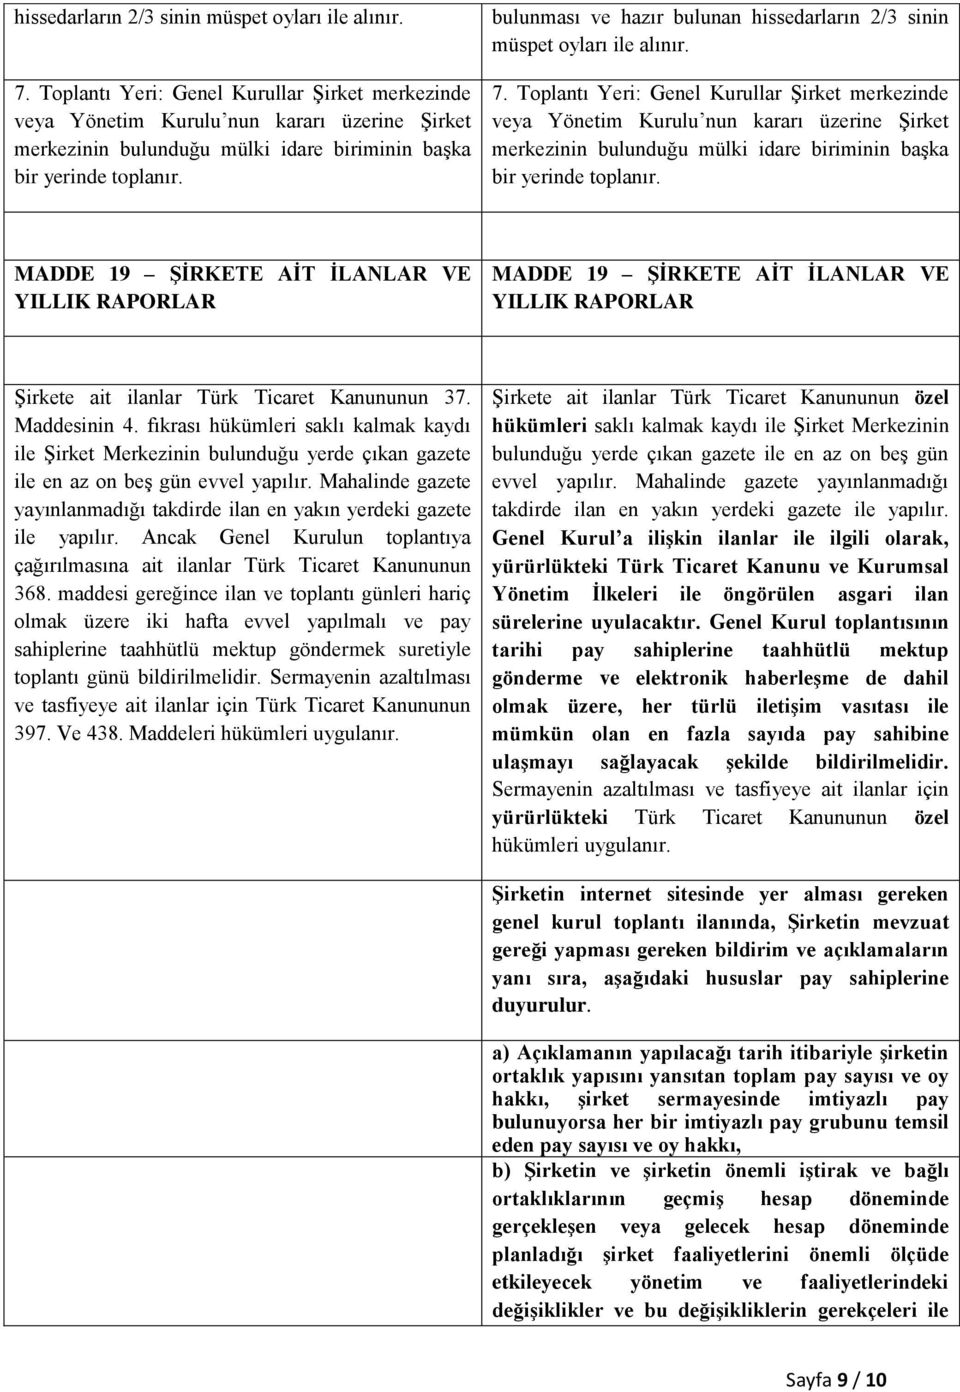 bulunması ve hazır bulunan   MADDE 19 ŞİRKETE AİT İLANLAR VE YILLIK RAPORLAR MADDE 19 ŞİRKETE AİT İLANLAR VE YILLIK RAPORLAR Şirkete ait ilanlar Türk Ticaret Kanununun 37. Maddesinin 4.